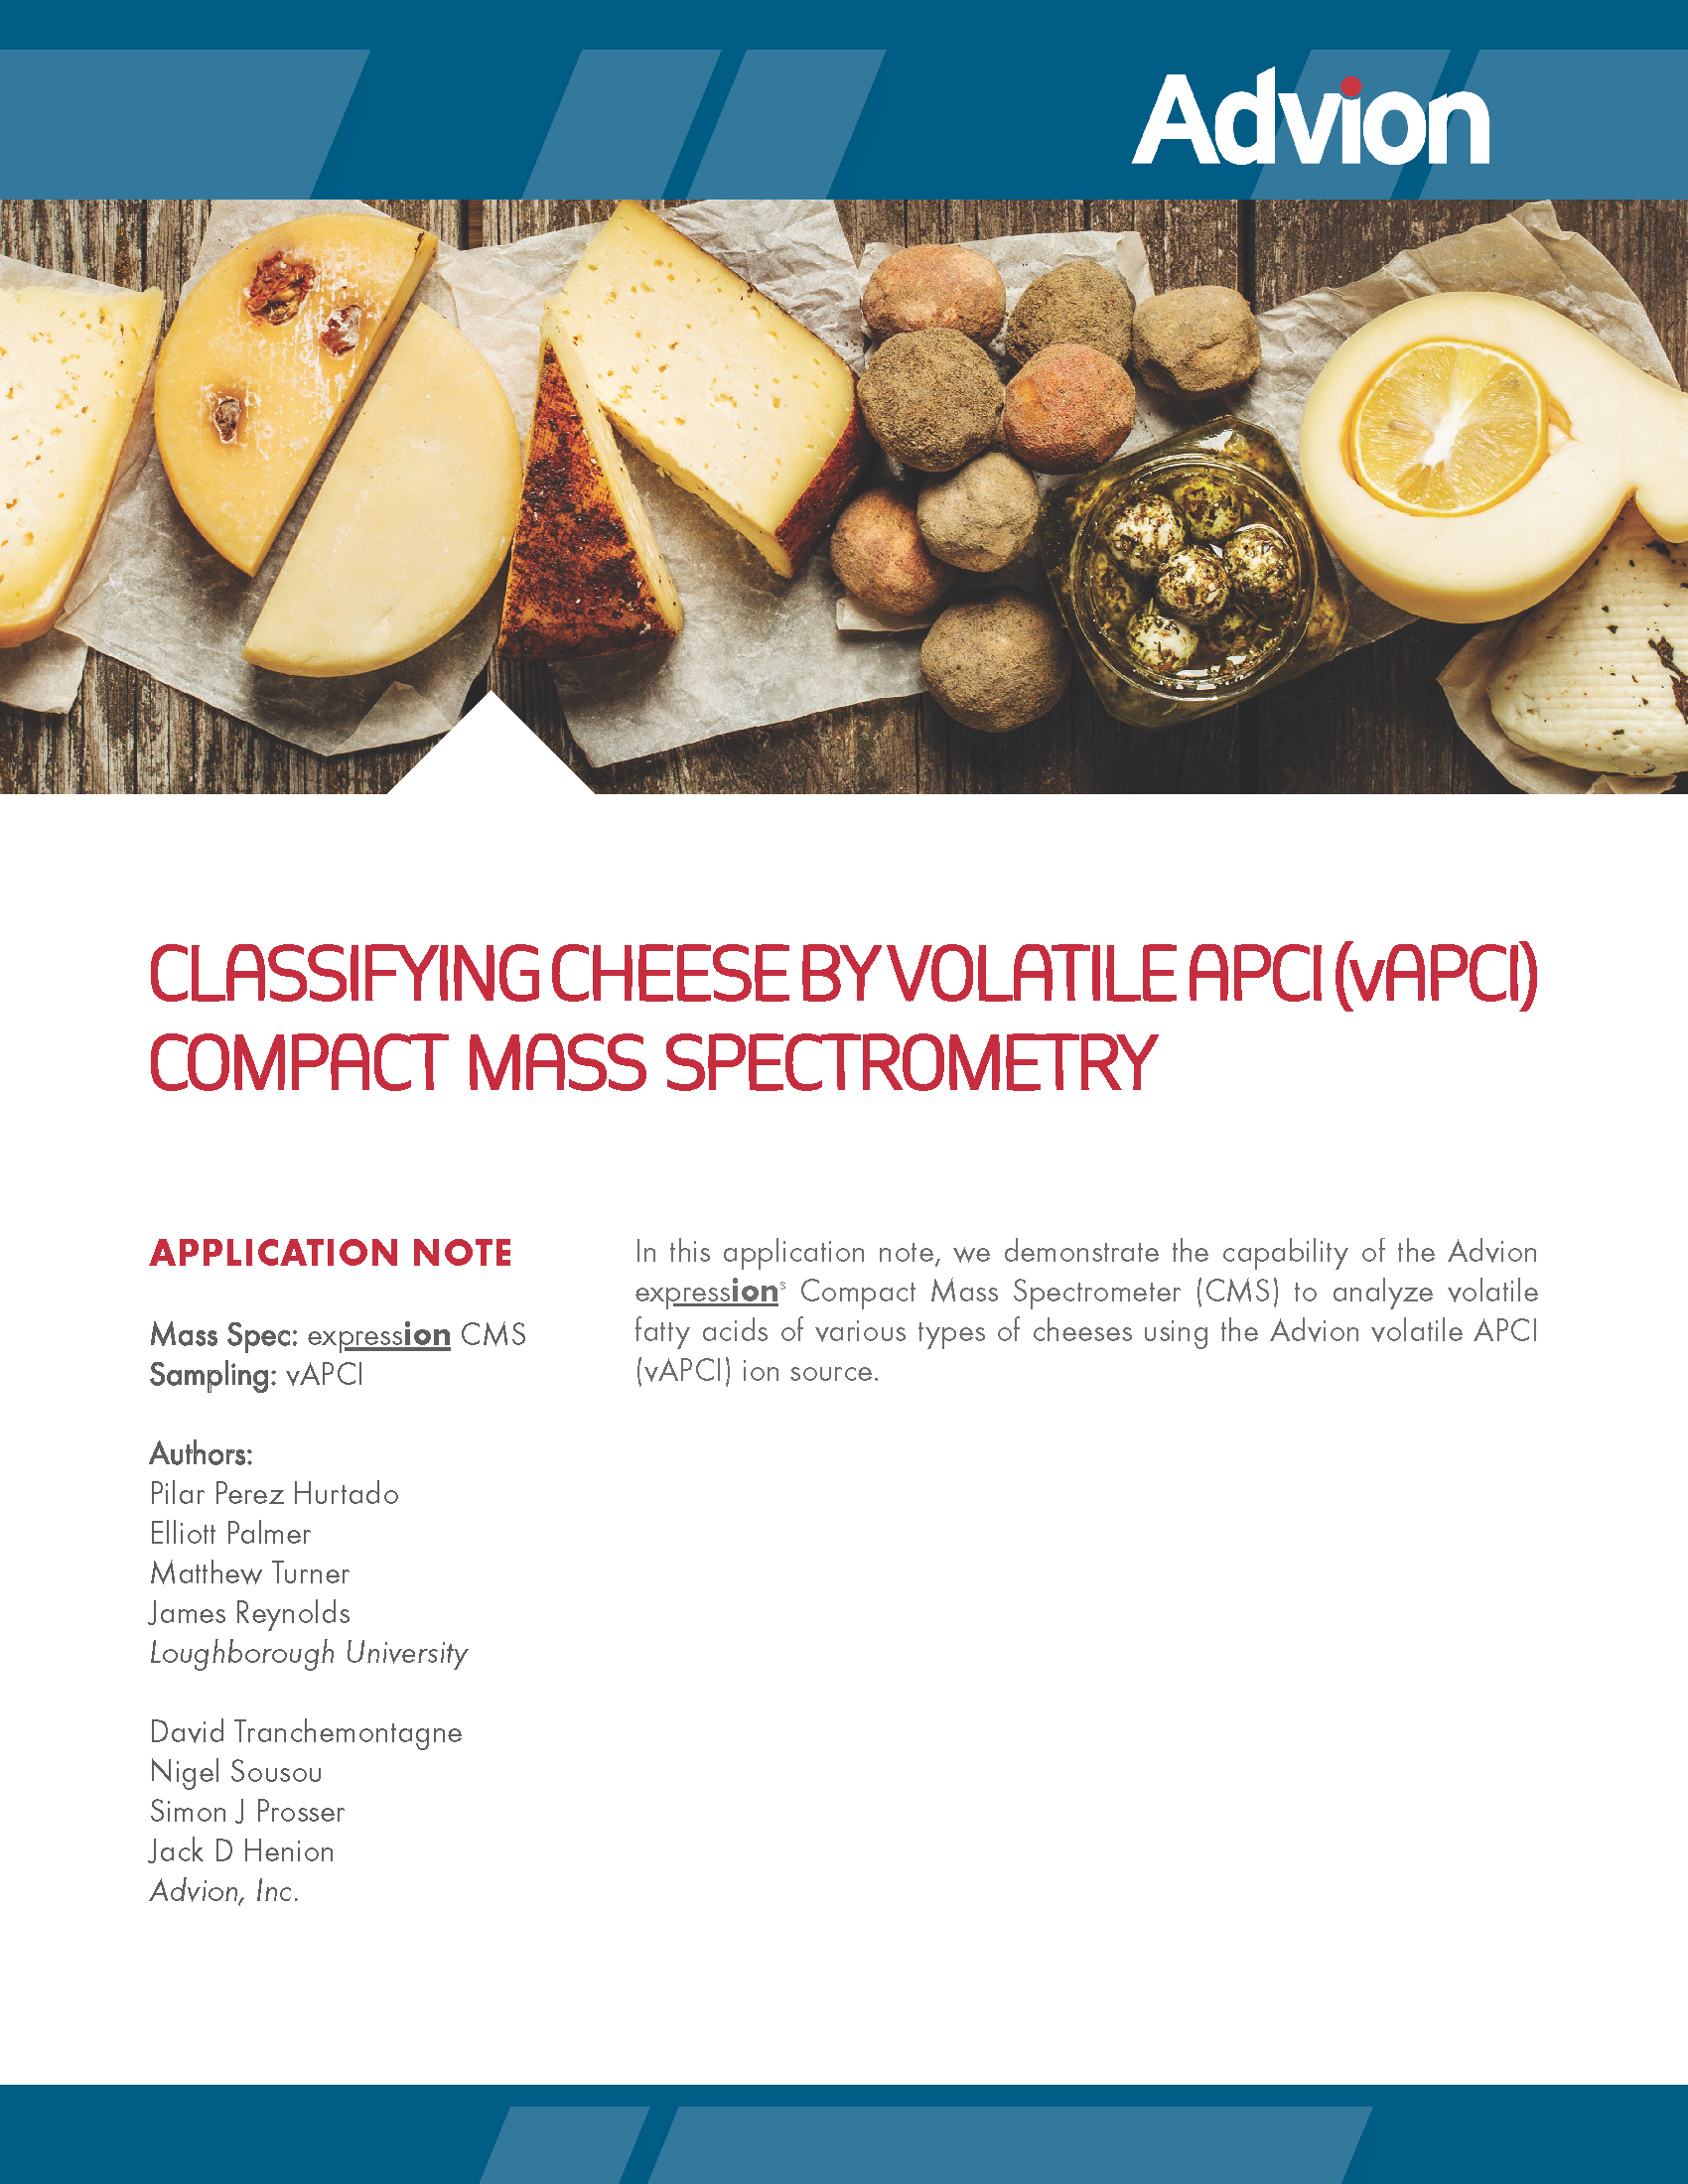 Classement des fromages par spectrométrie de masse compacte APCI volatile (vAPCI)